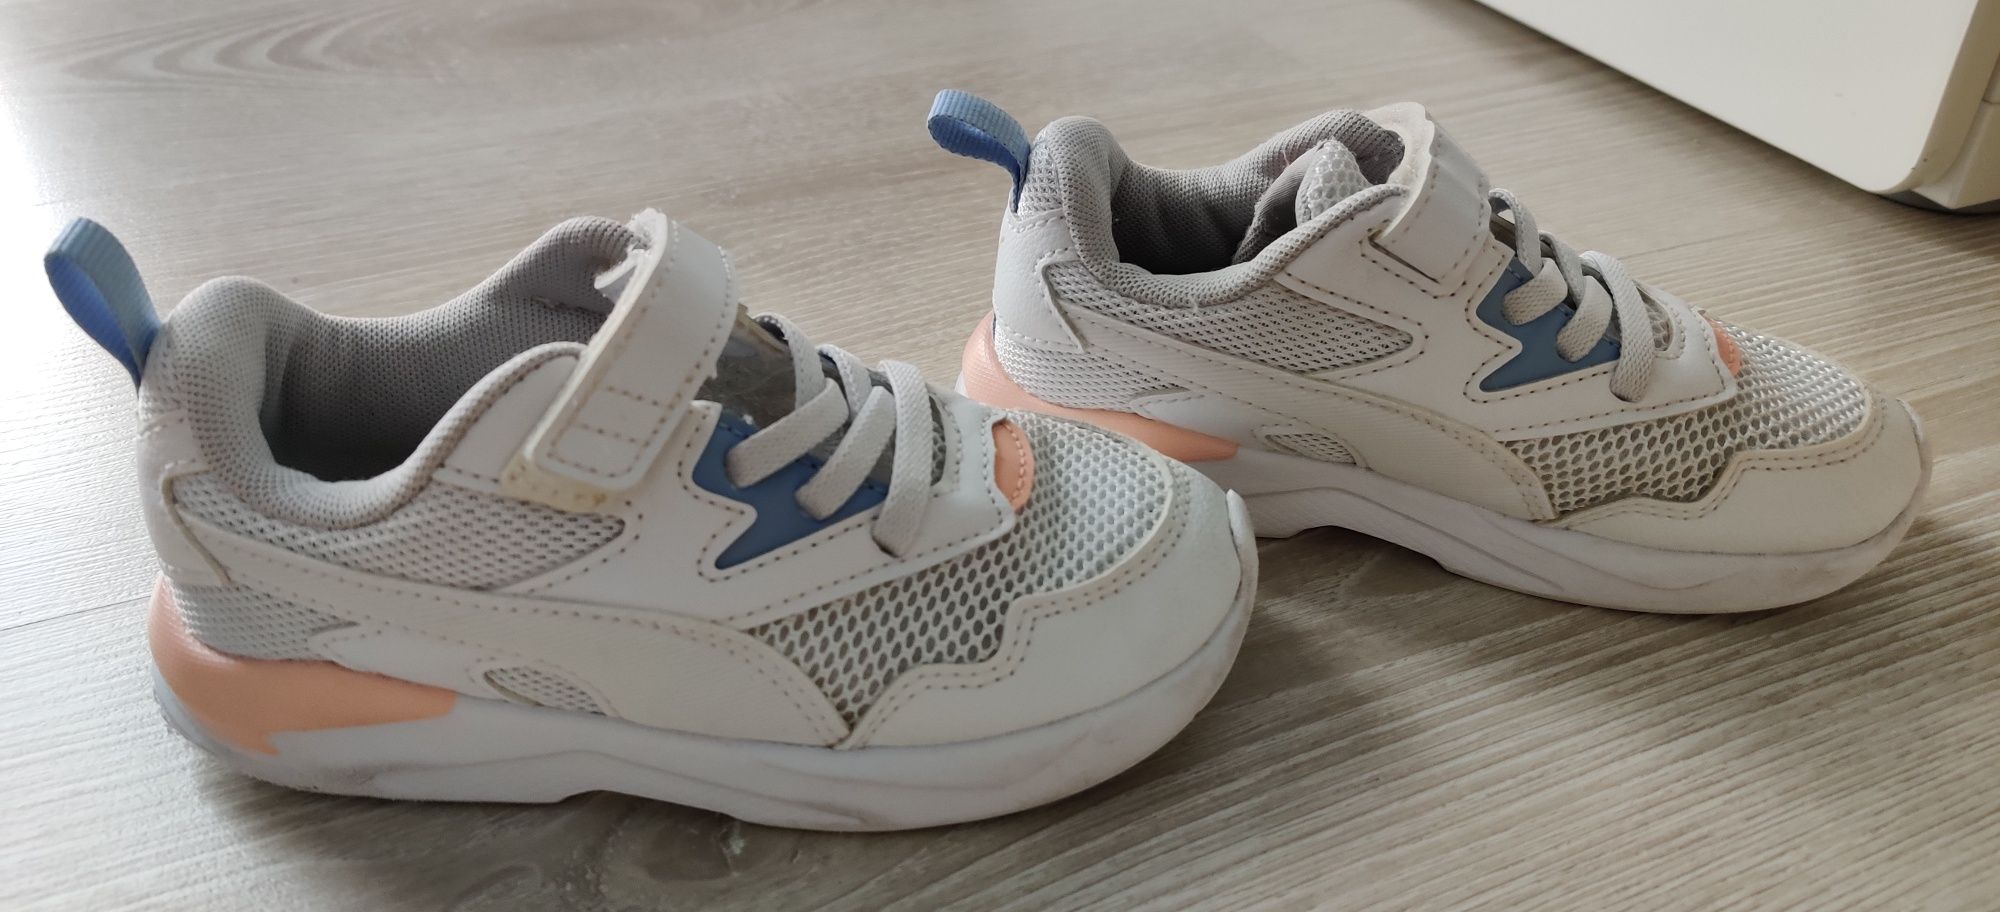 Incaltaminte sport PUMA/Adidasi/Pantofi sport copii, masura 26, 16 cm